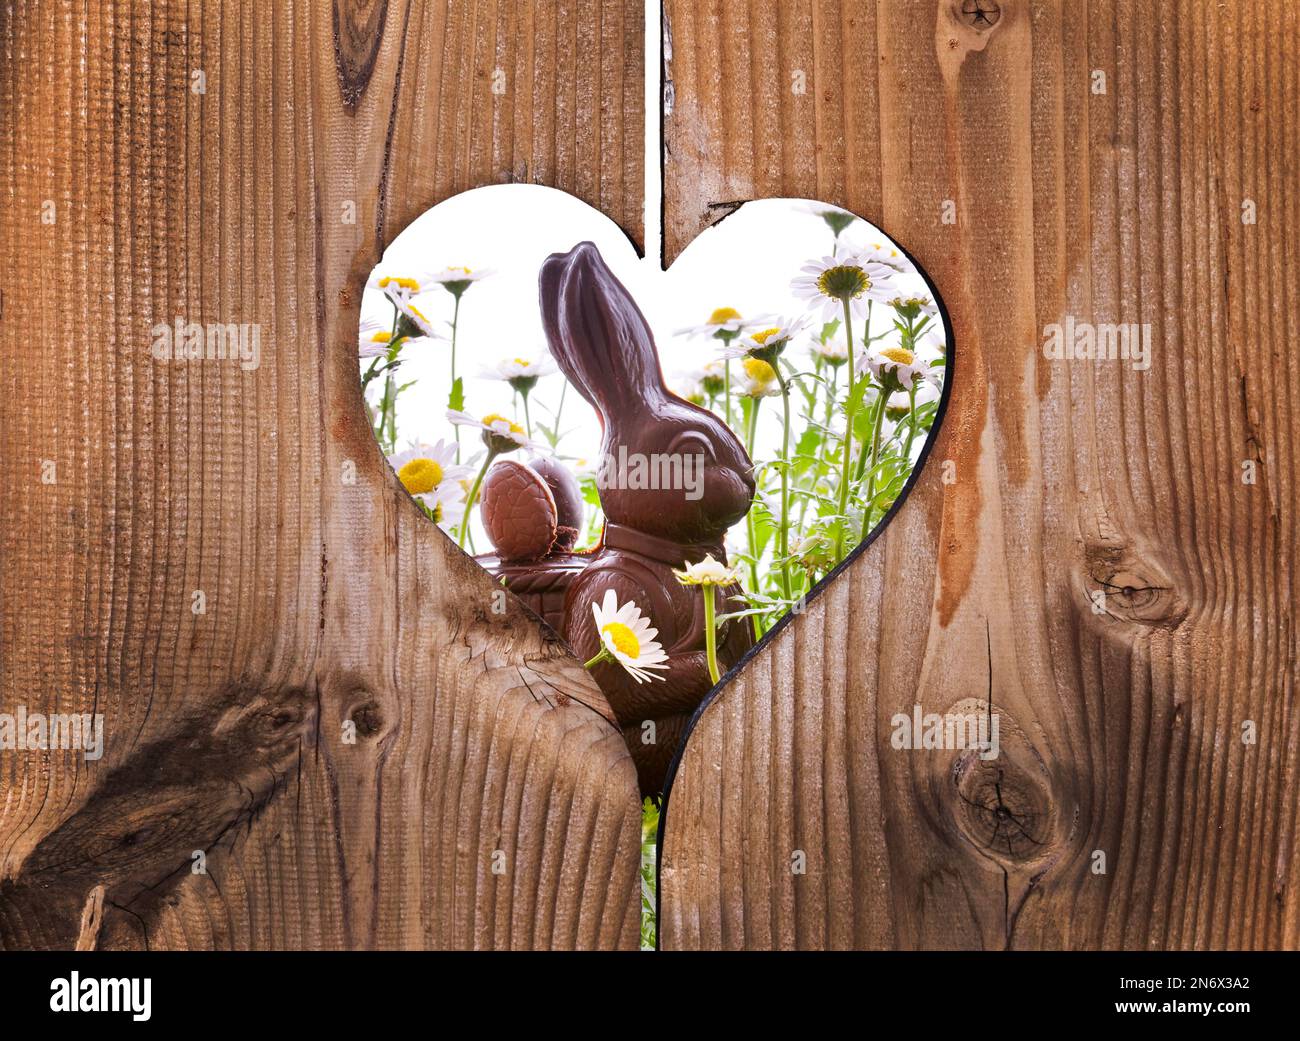 Lapin au chocolat de Pâques avec pâquerettes derrière des planches en bois avec un coeur Banque D'Images